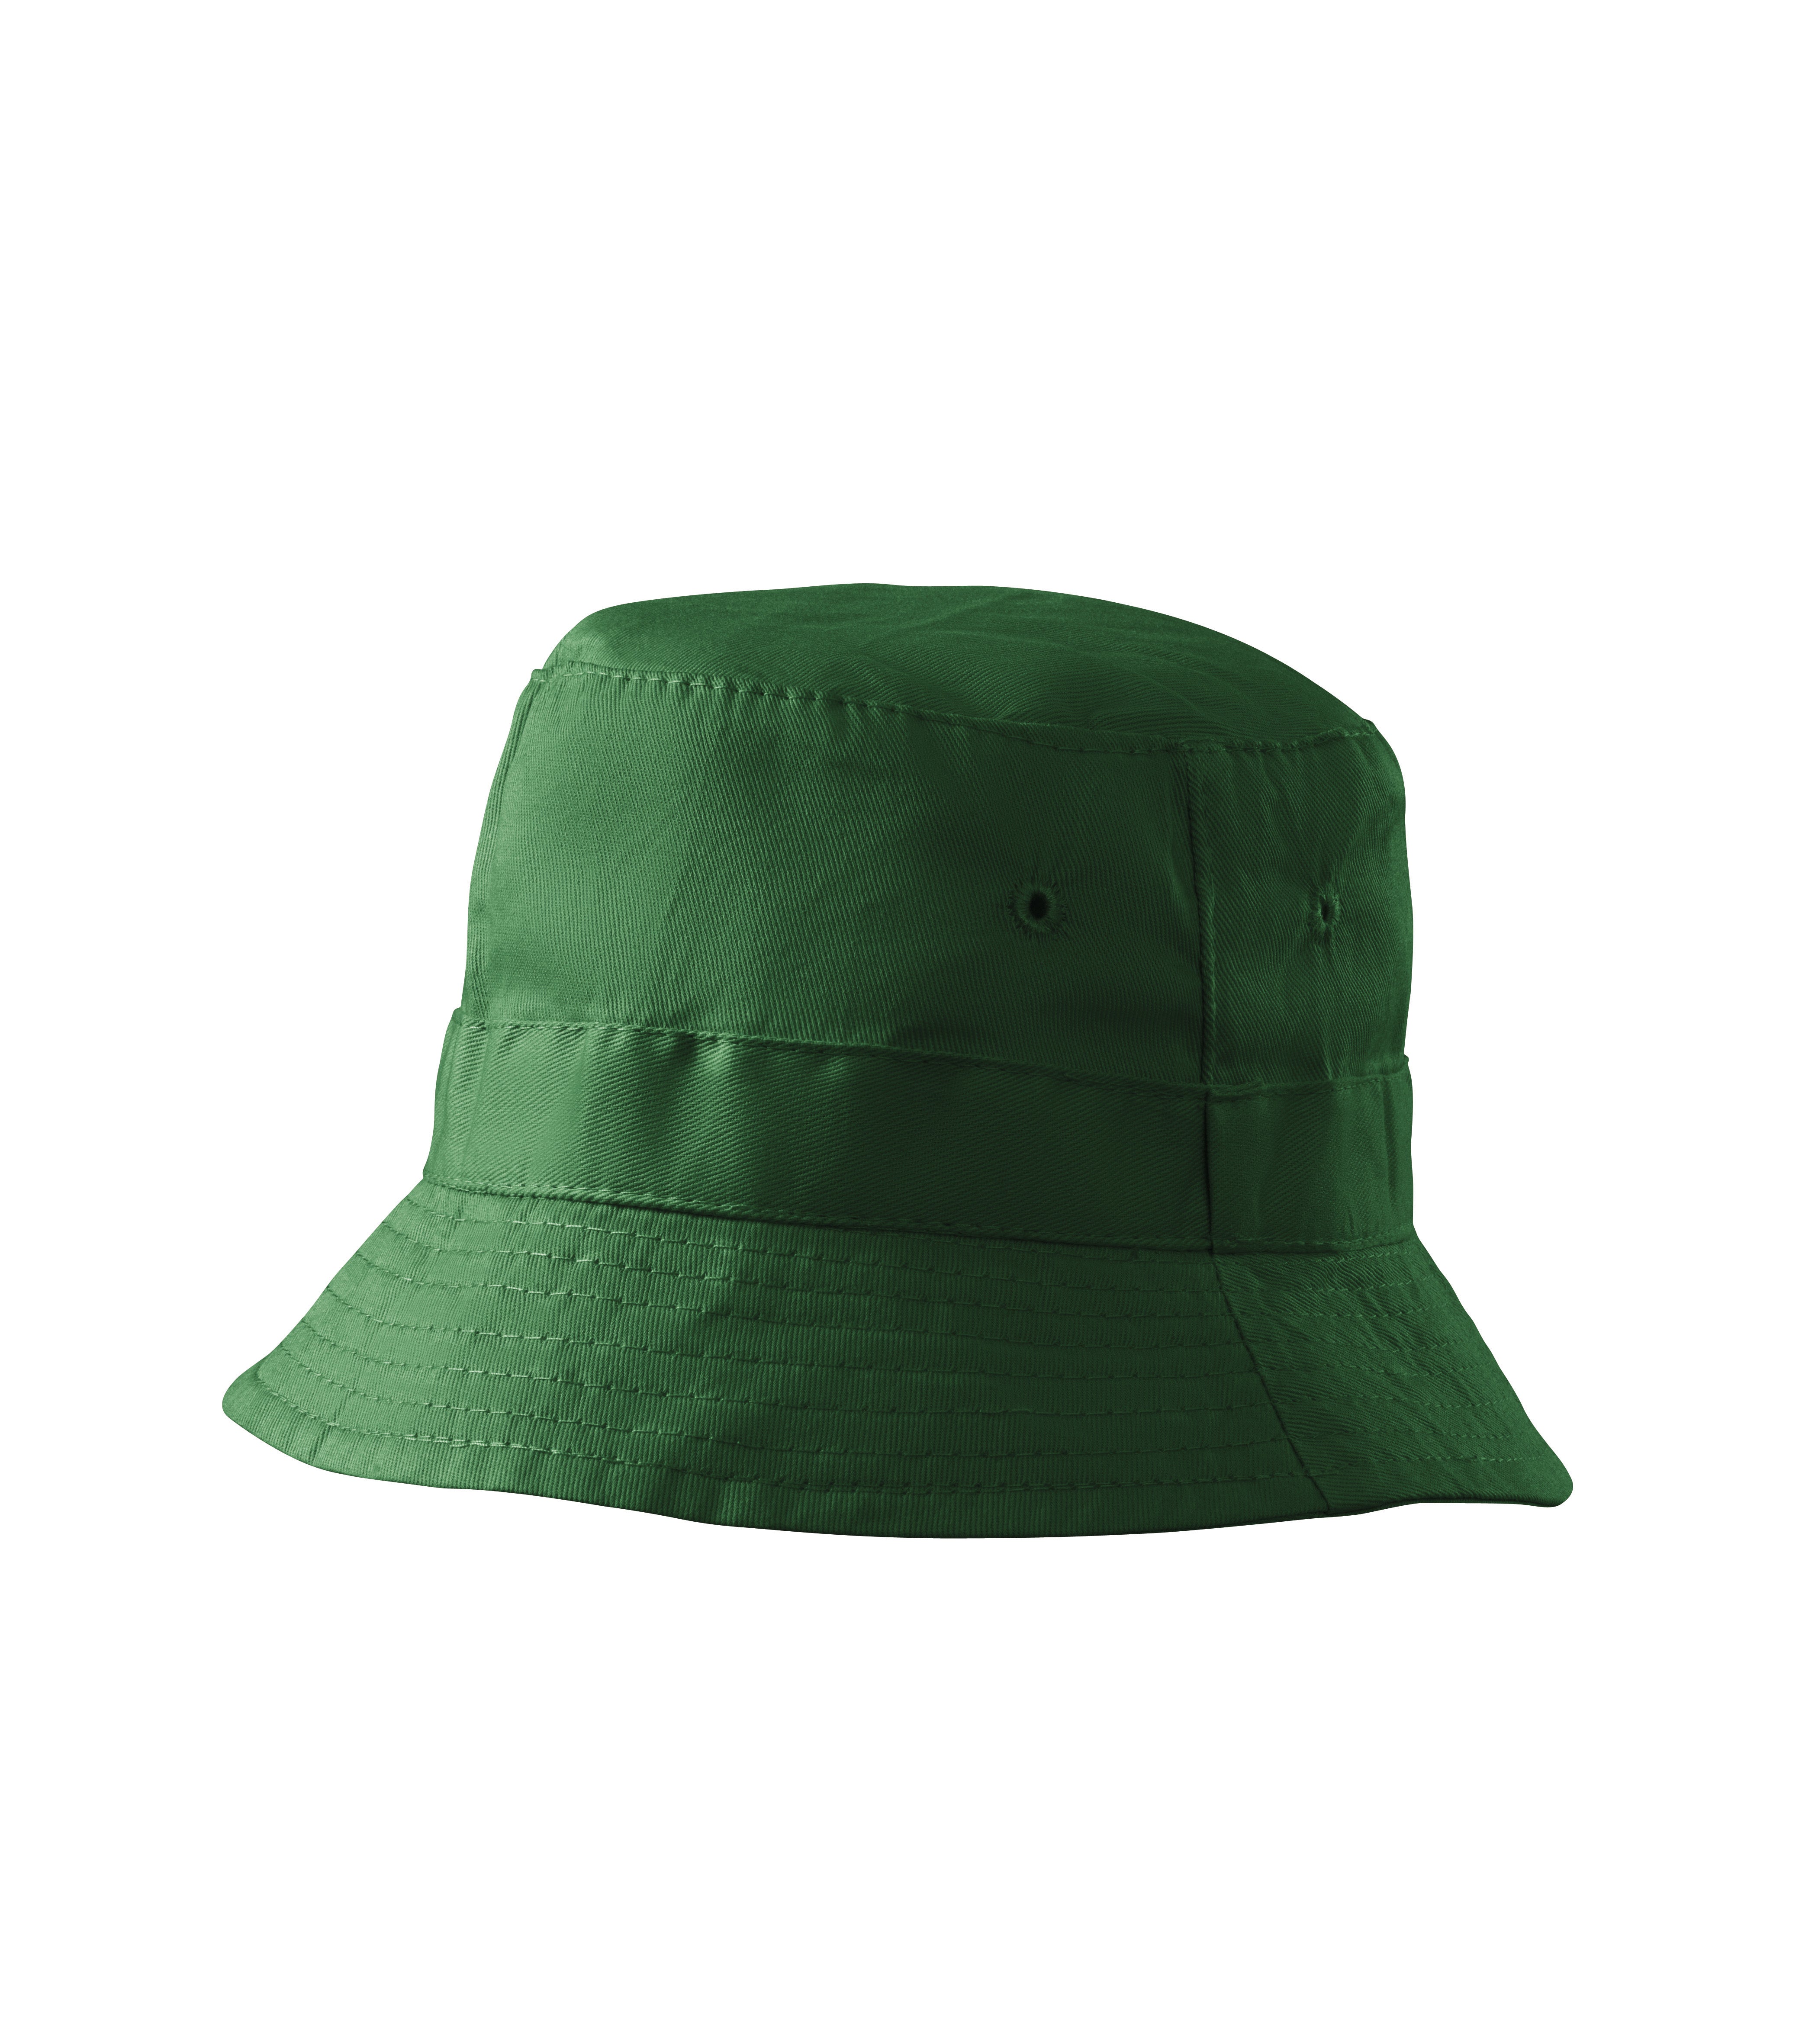 Classic pălărie unisex verde sticlă - brainoromania